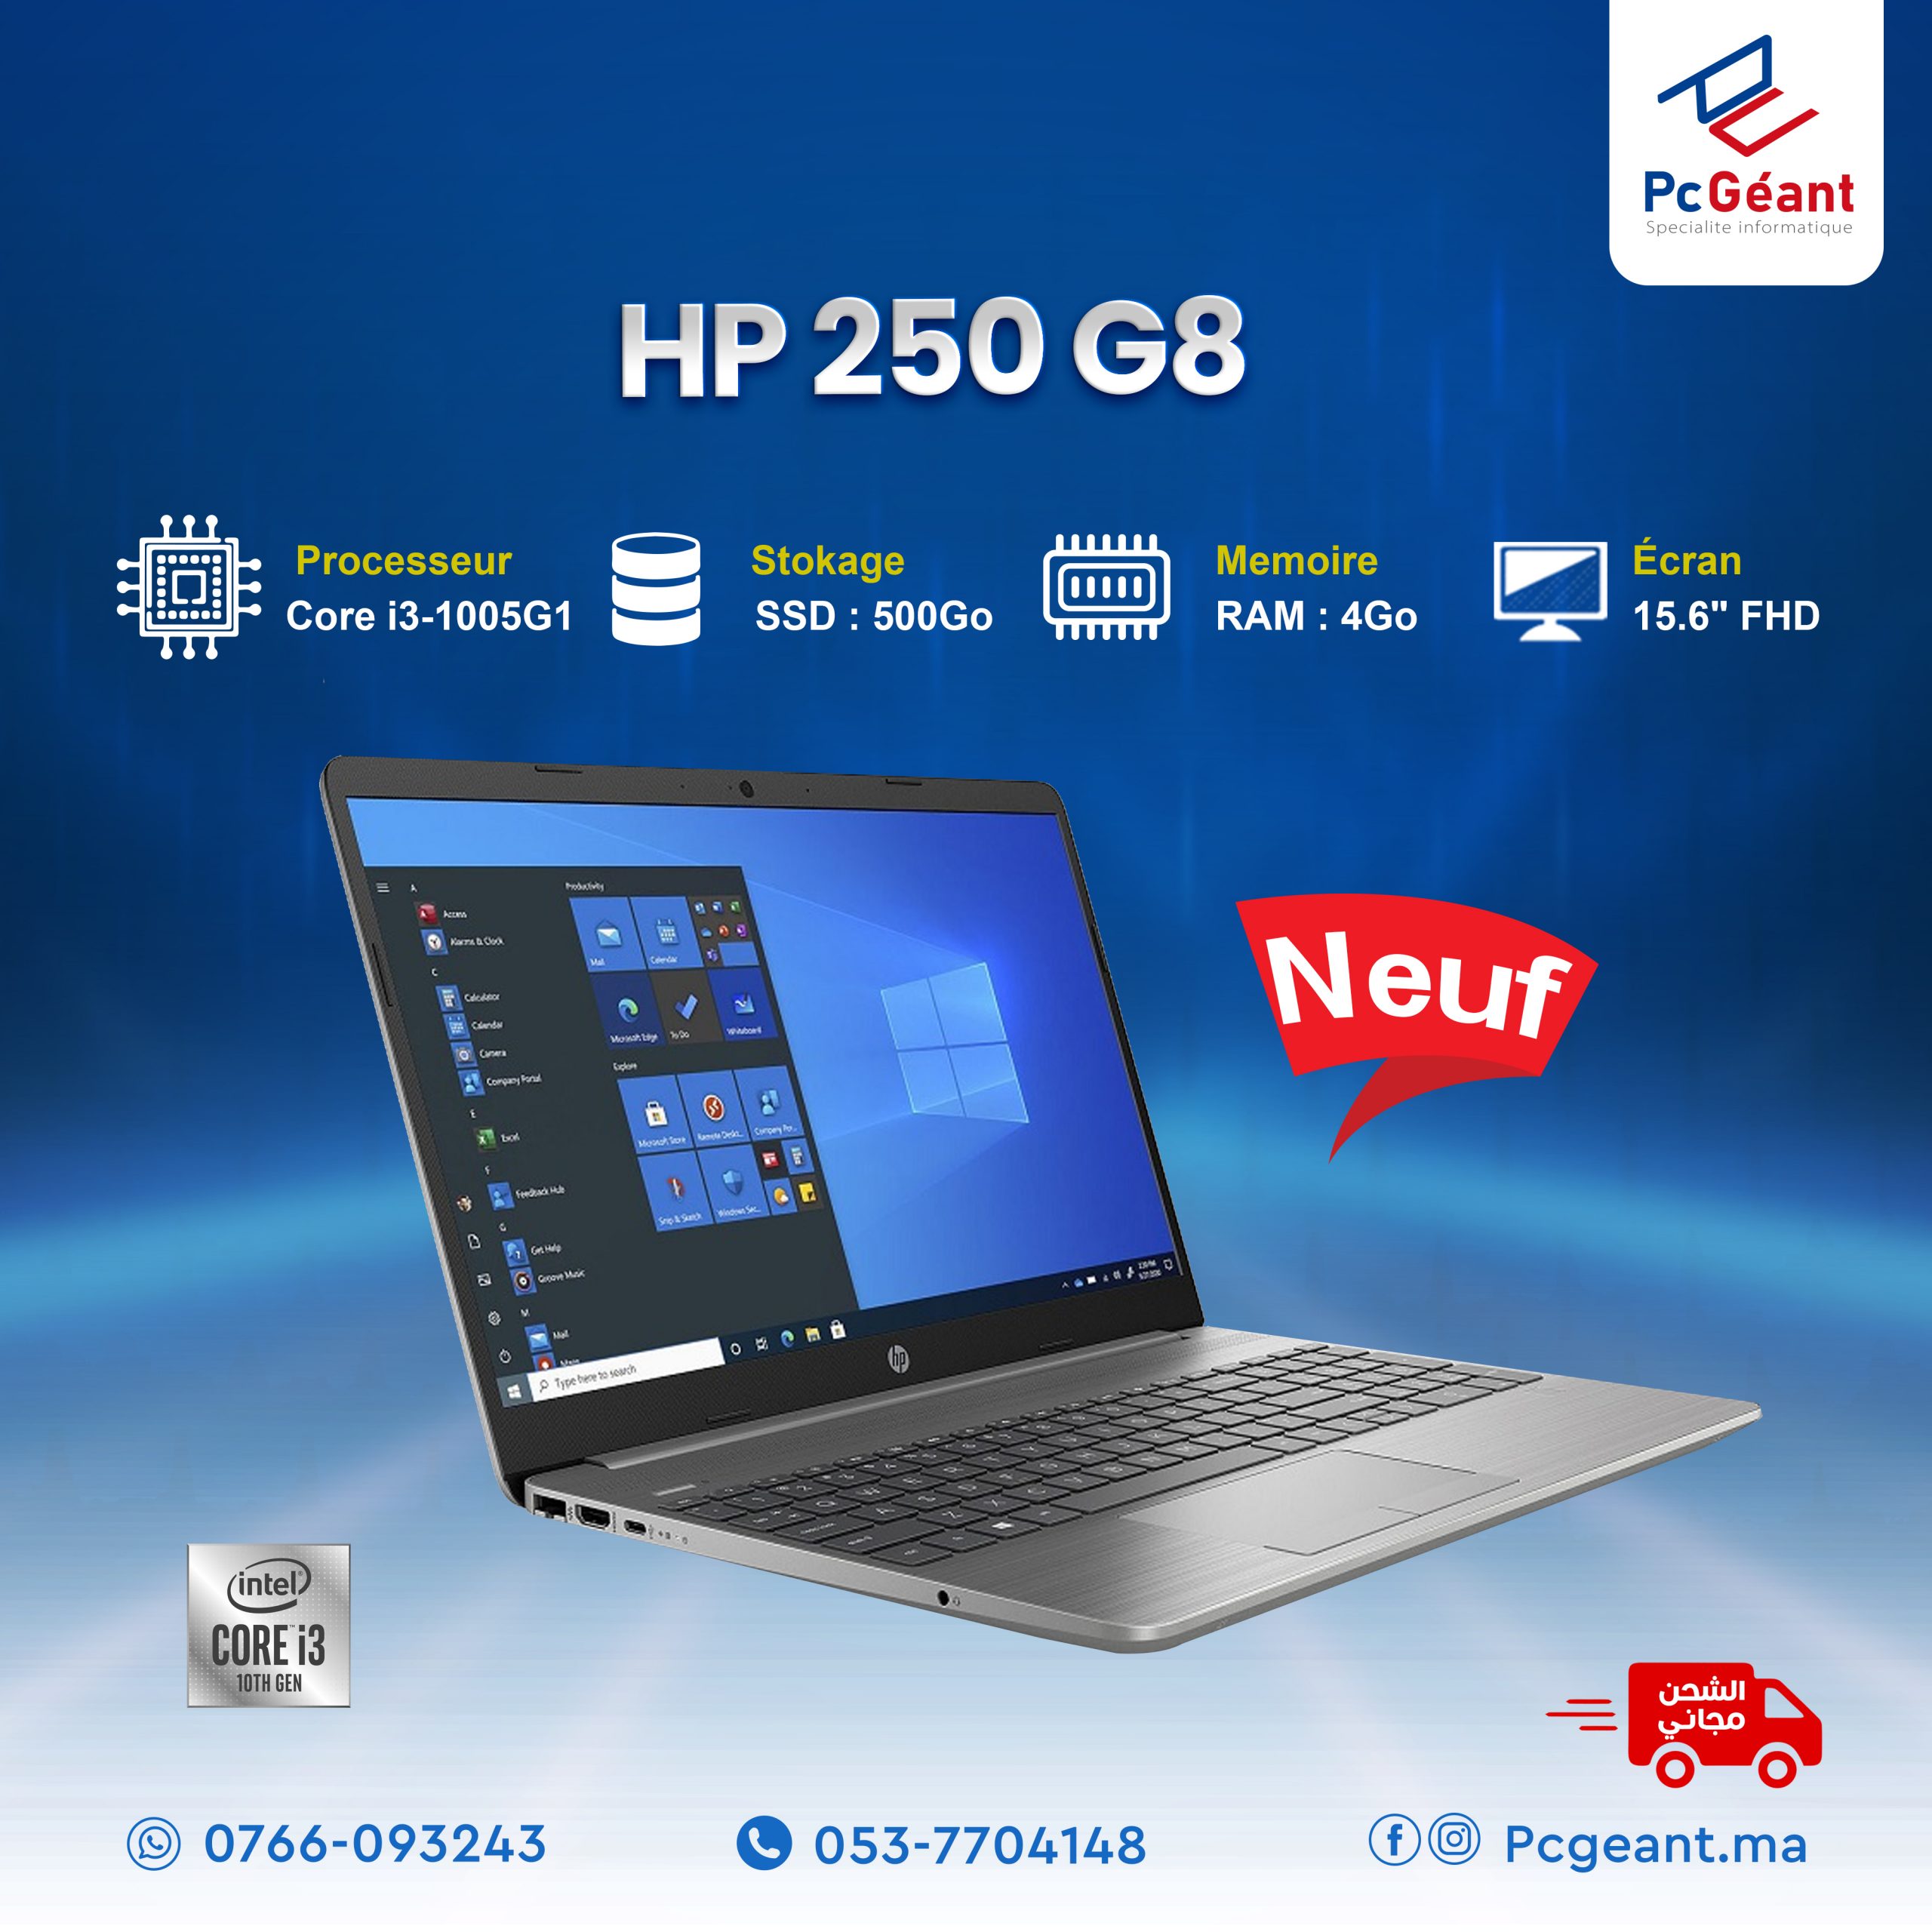 HP 250 G8 Core™ i3-1005G1 (10ème génération) 4Go I 500Go I 15.6″ [ Neuf ] –  PC Geant